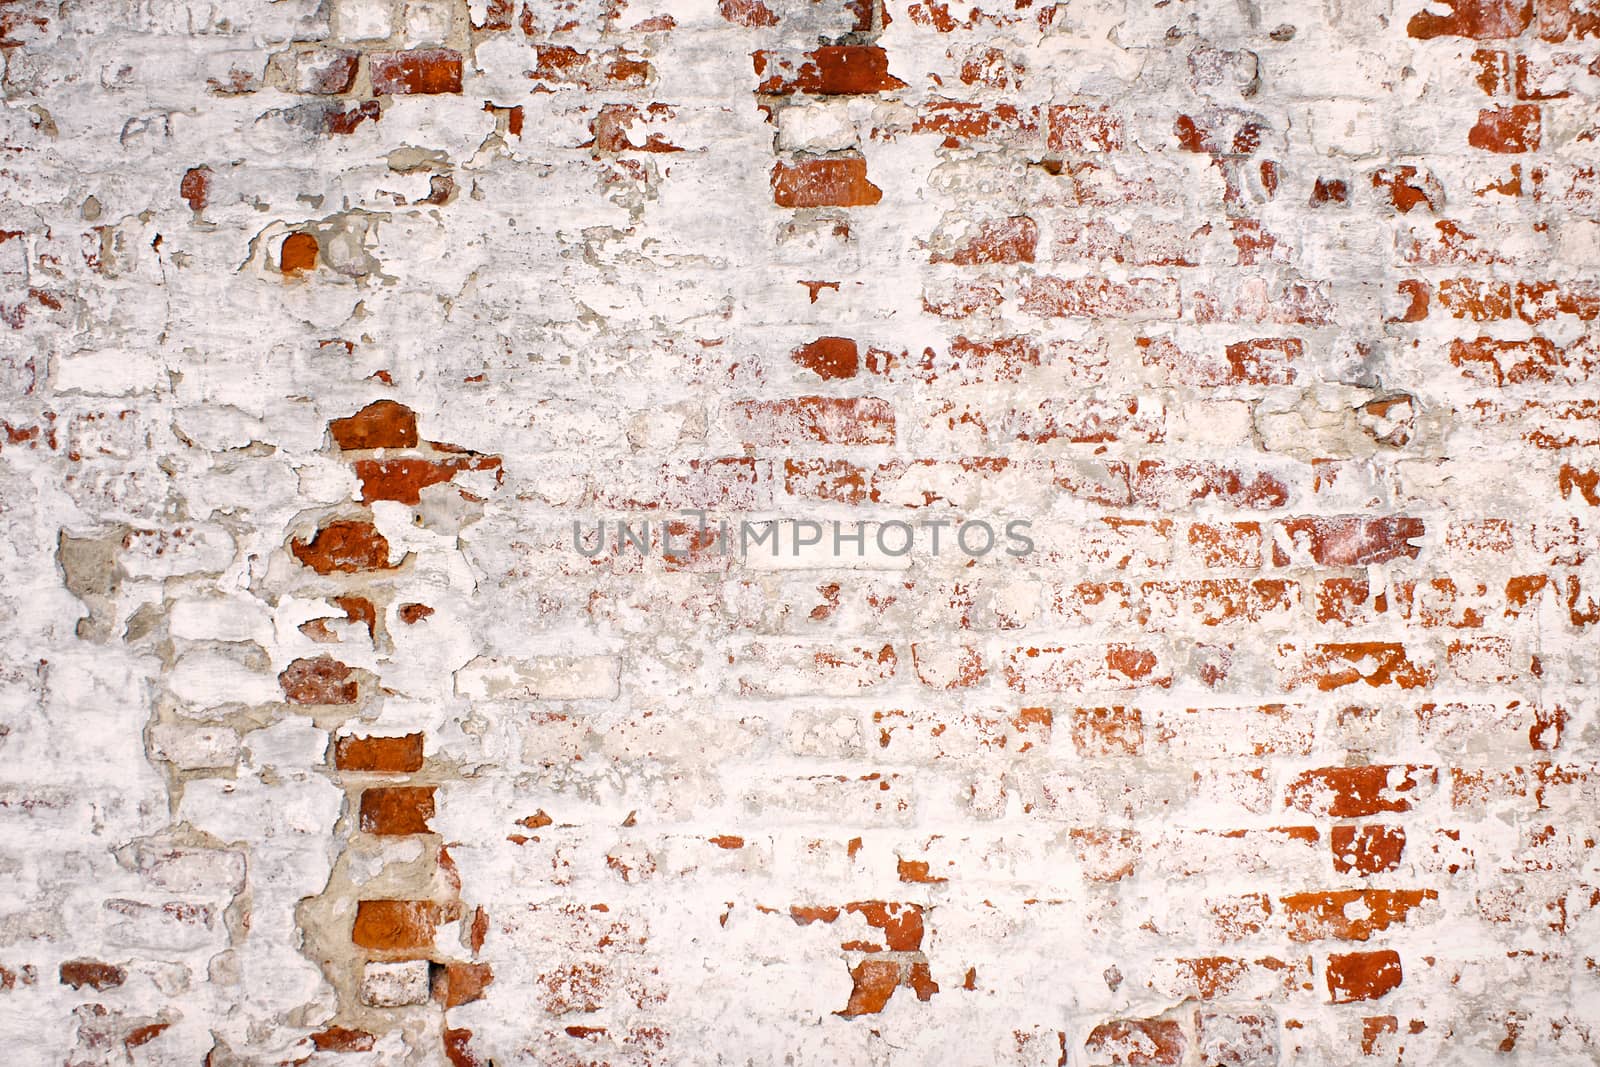 urban background grunge wall texture of red bricks